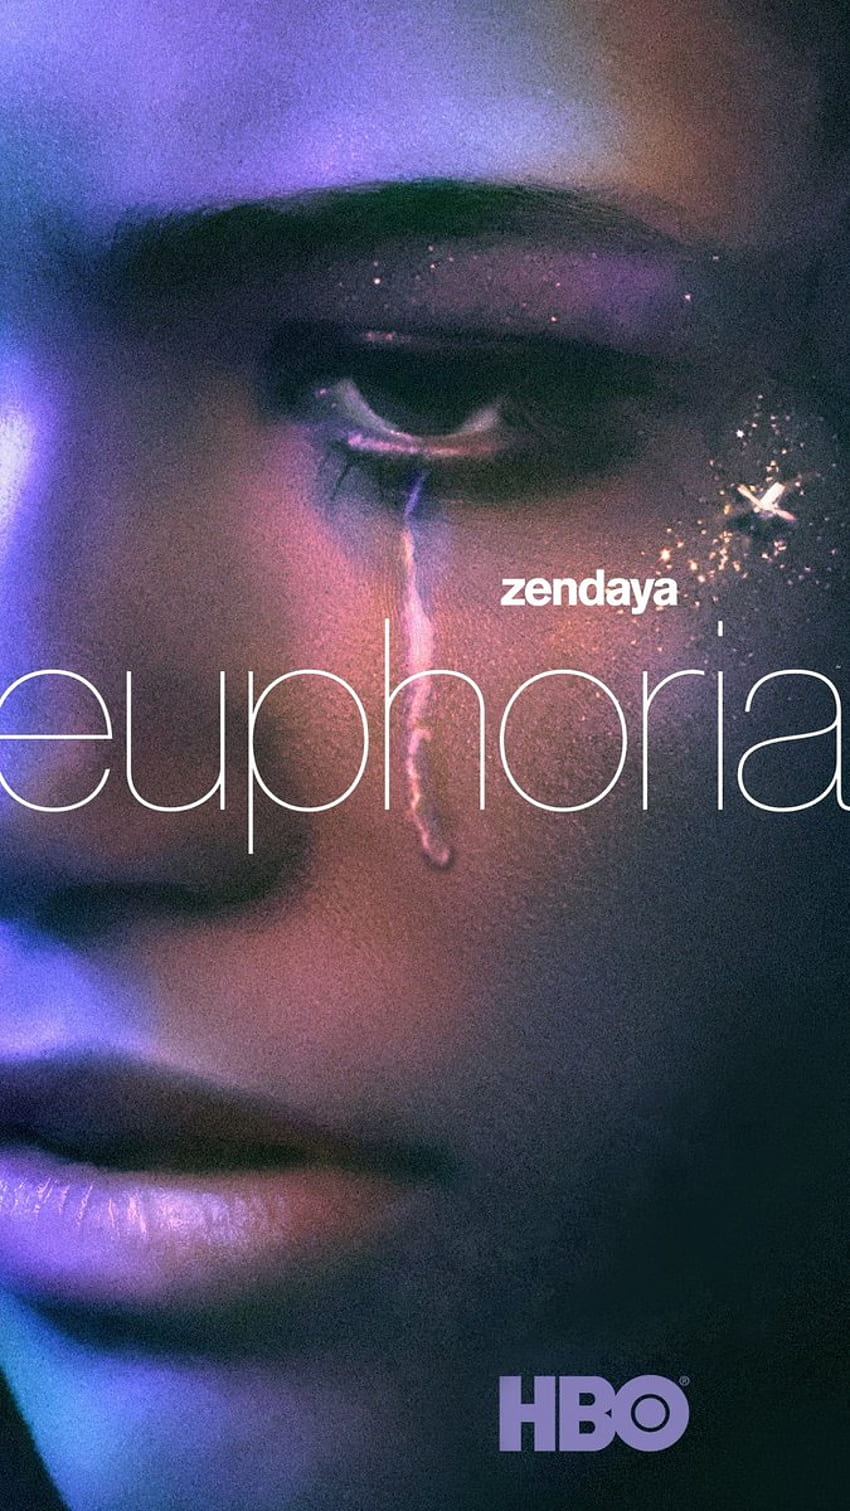 euphoria on in 2020. Zendaya, Movie posters, iPhone, Euphoria HBO HD phone wallpaper